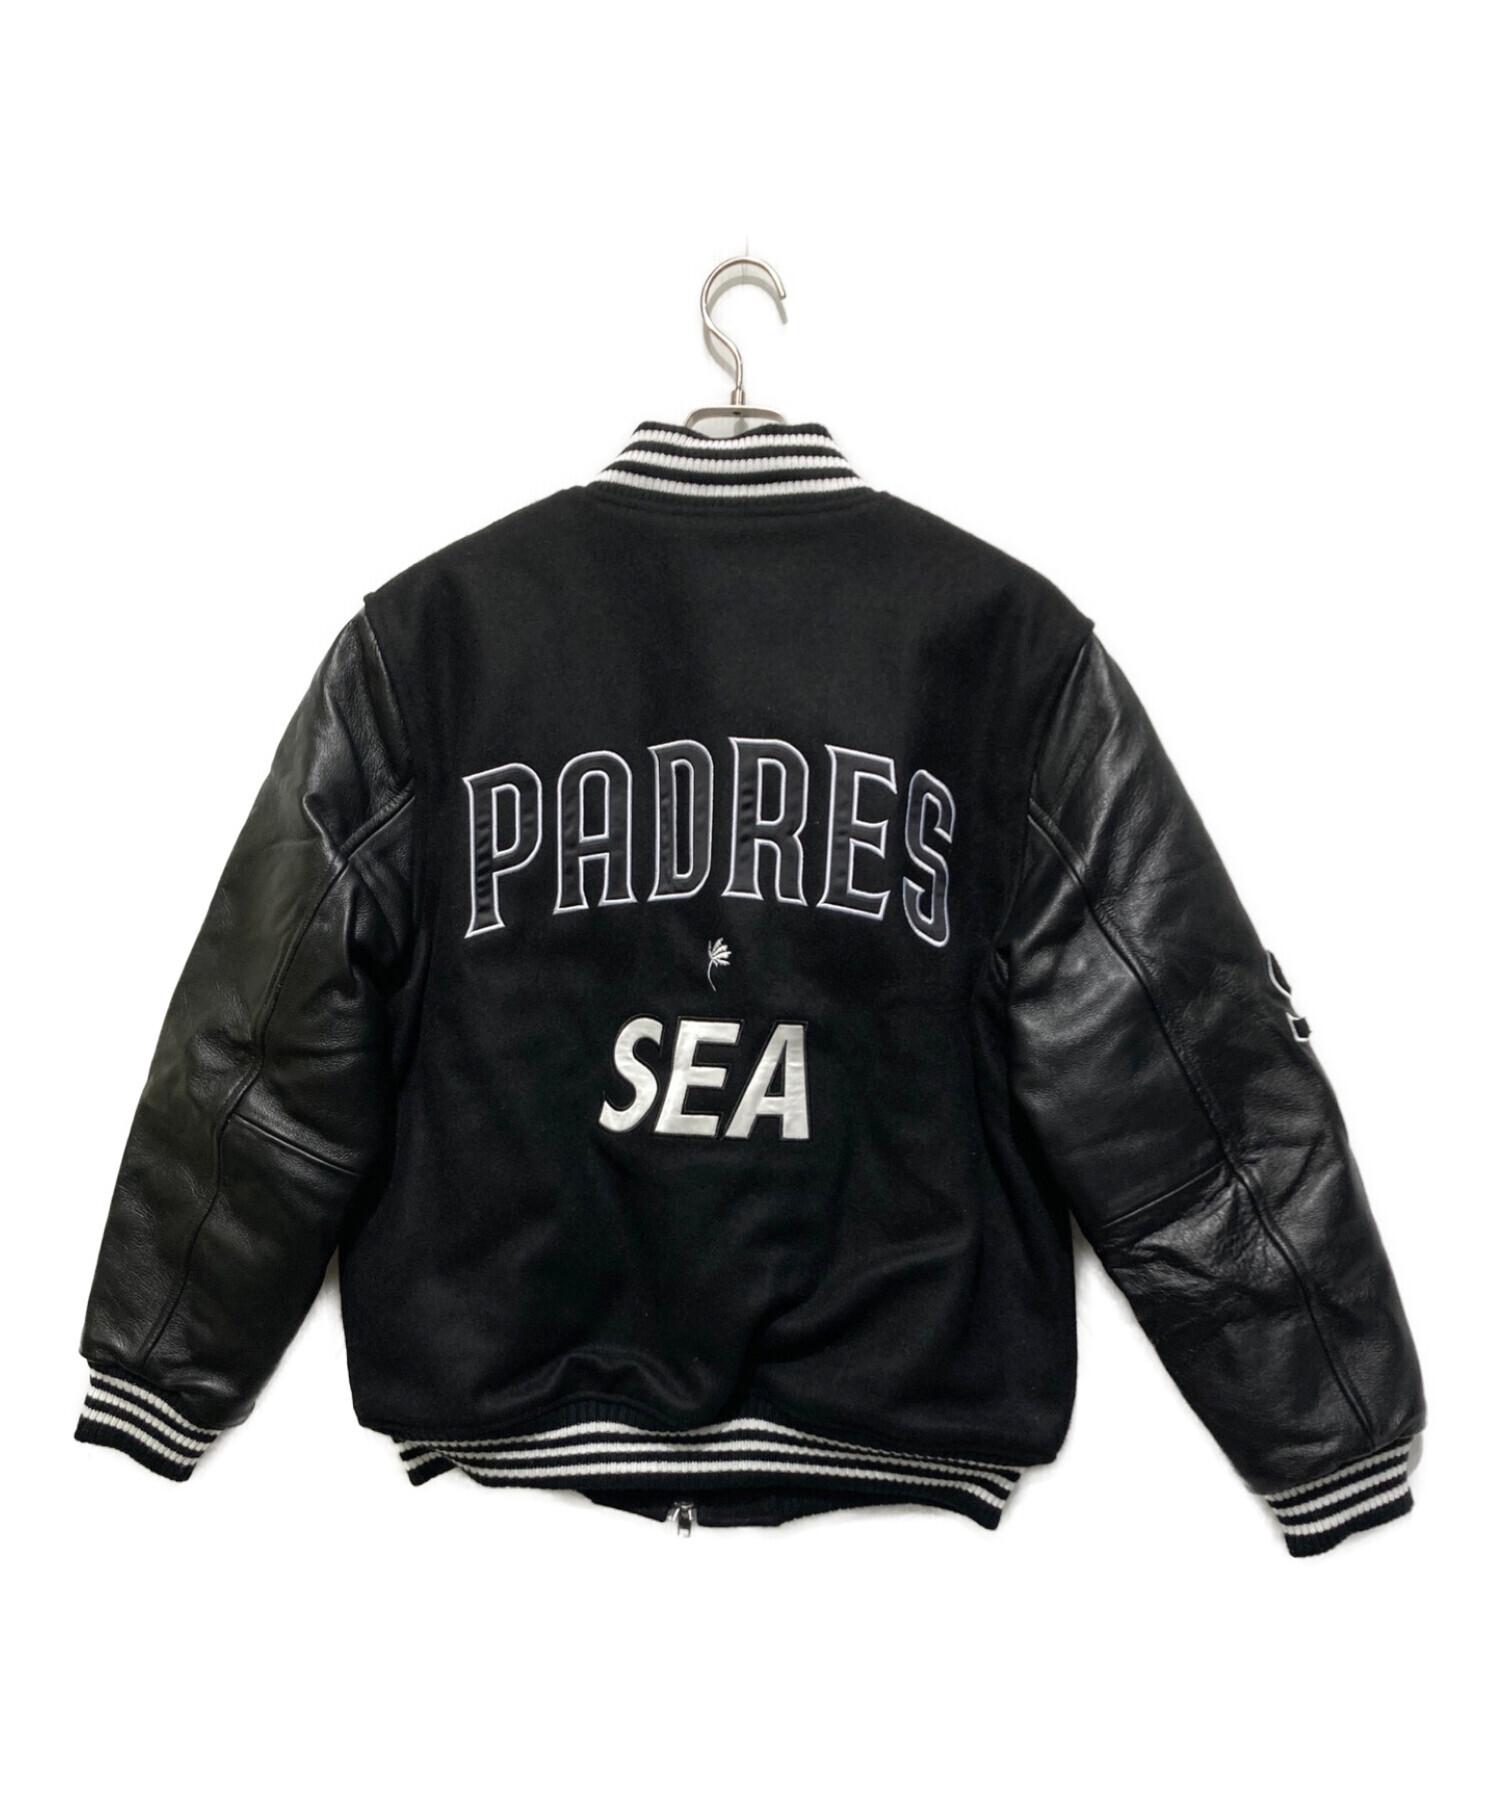 約60cm着丈約64cmWIND AND SEA × Padres Varsity Jacket